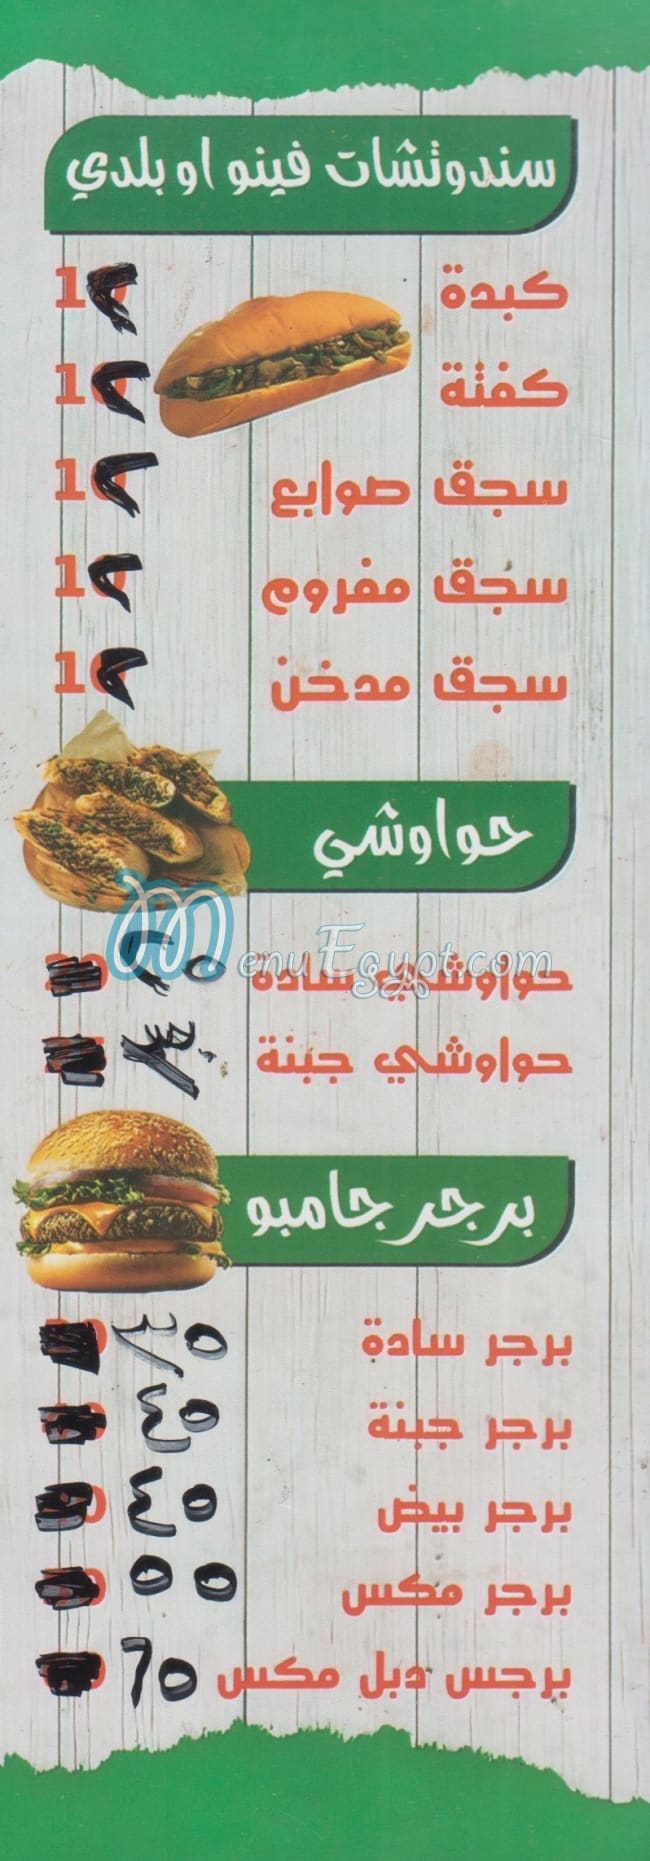 Abo Rabi3 menu